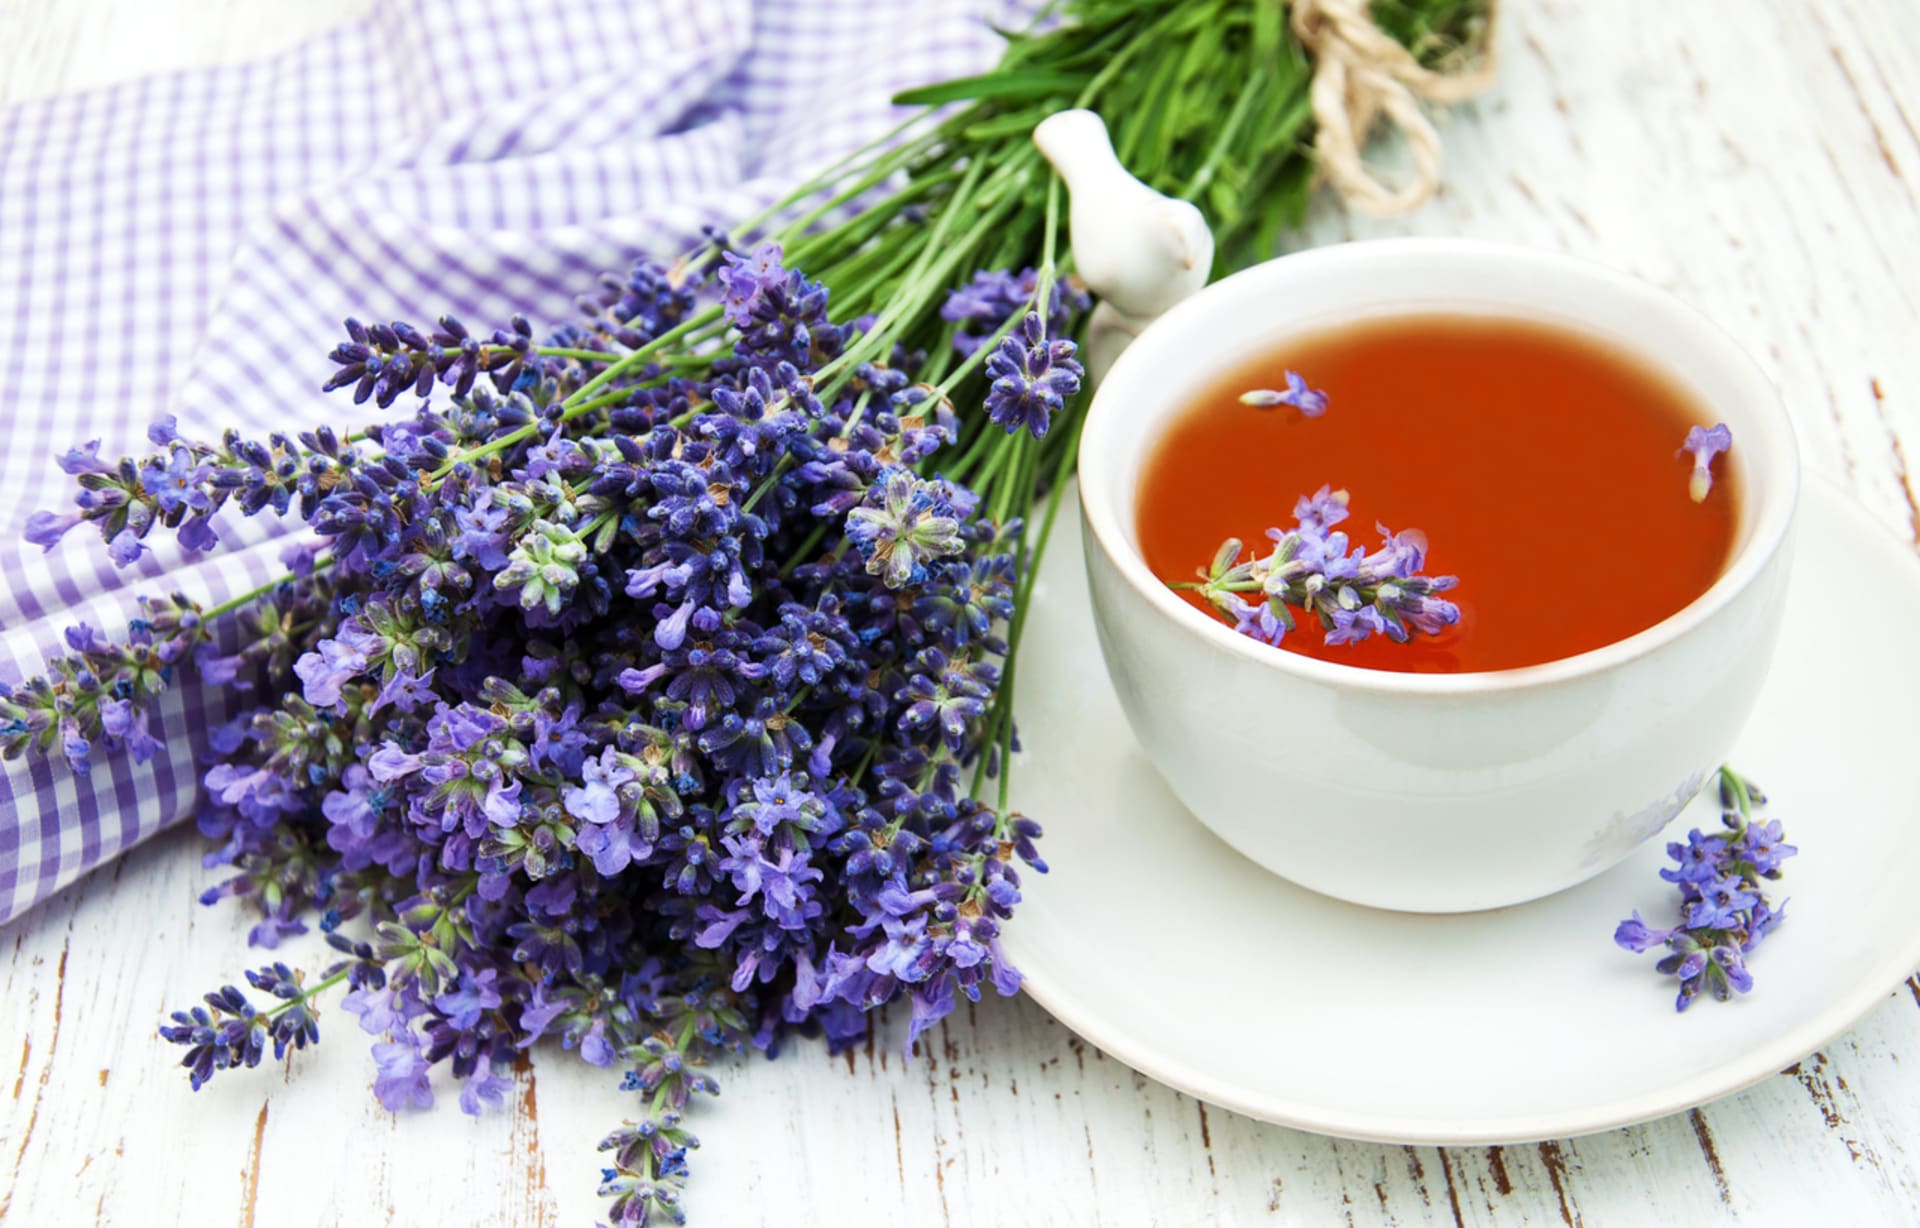 Levandulový čaj popíjíme po doušcích během dne po jídle, když nás trápí plynatost a nadýmání (750 ml) nebo při žaludeční nevolnosti. Při velkém psychickém napětí můžeme vypít tři šálky až vlažného levandulového čaje za den